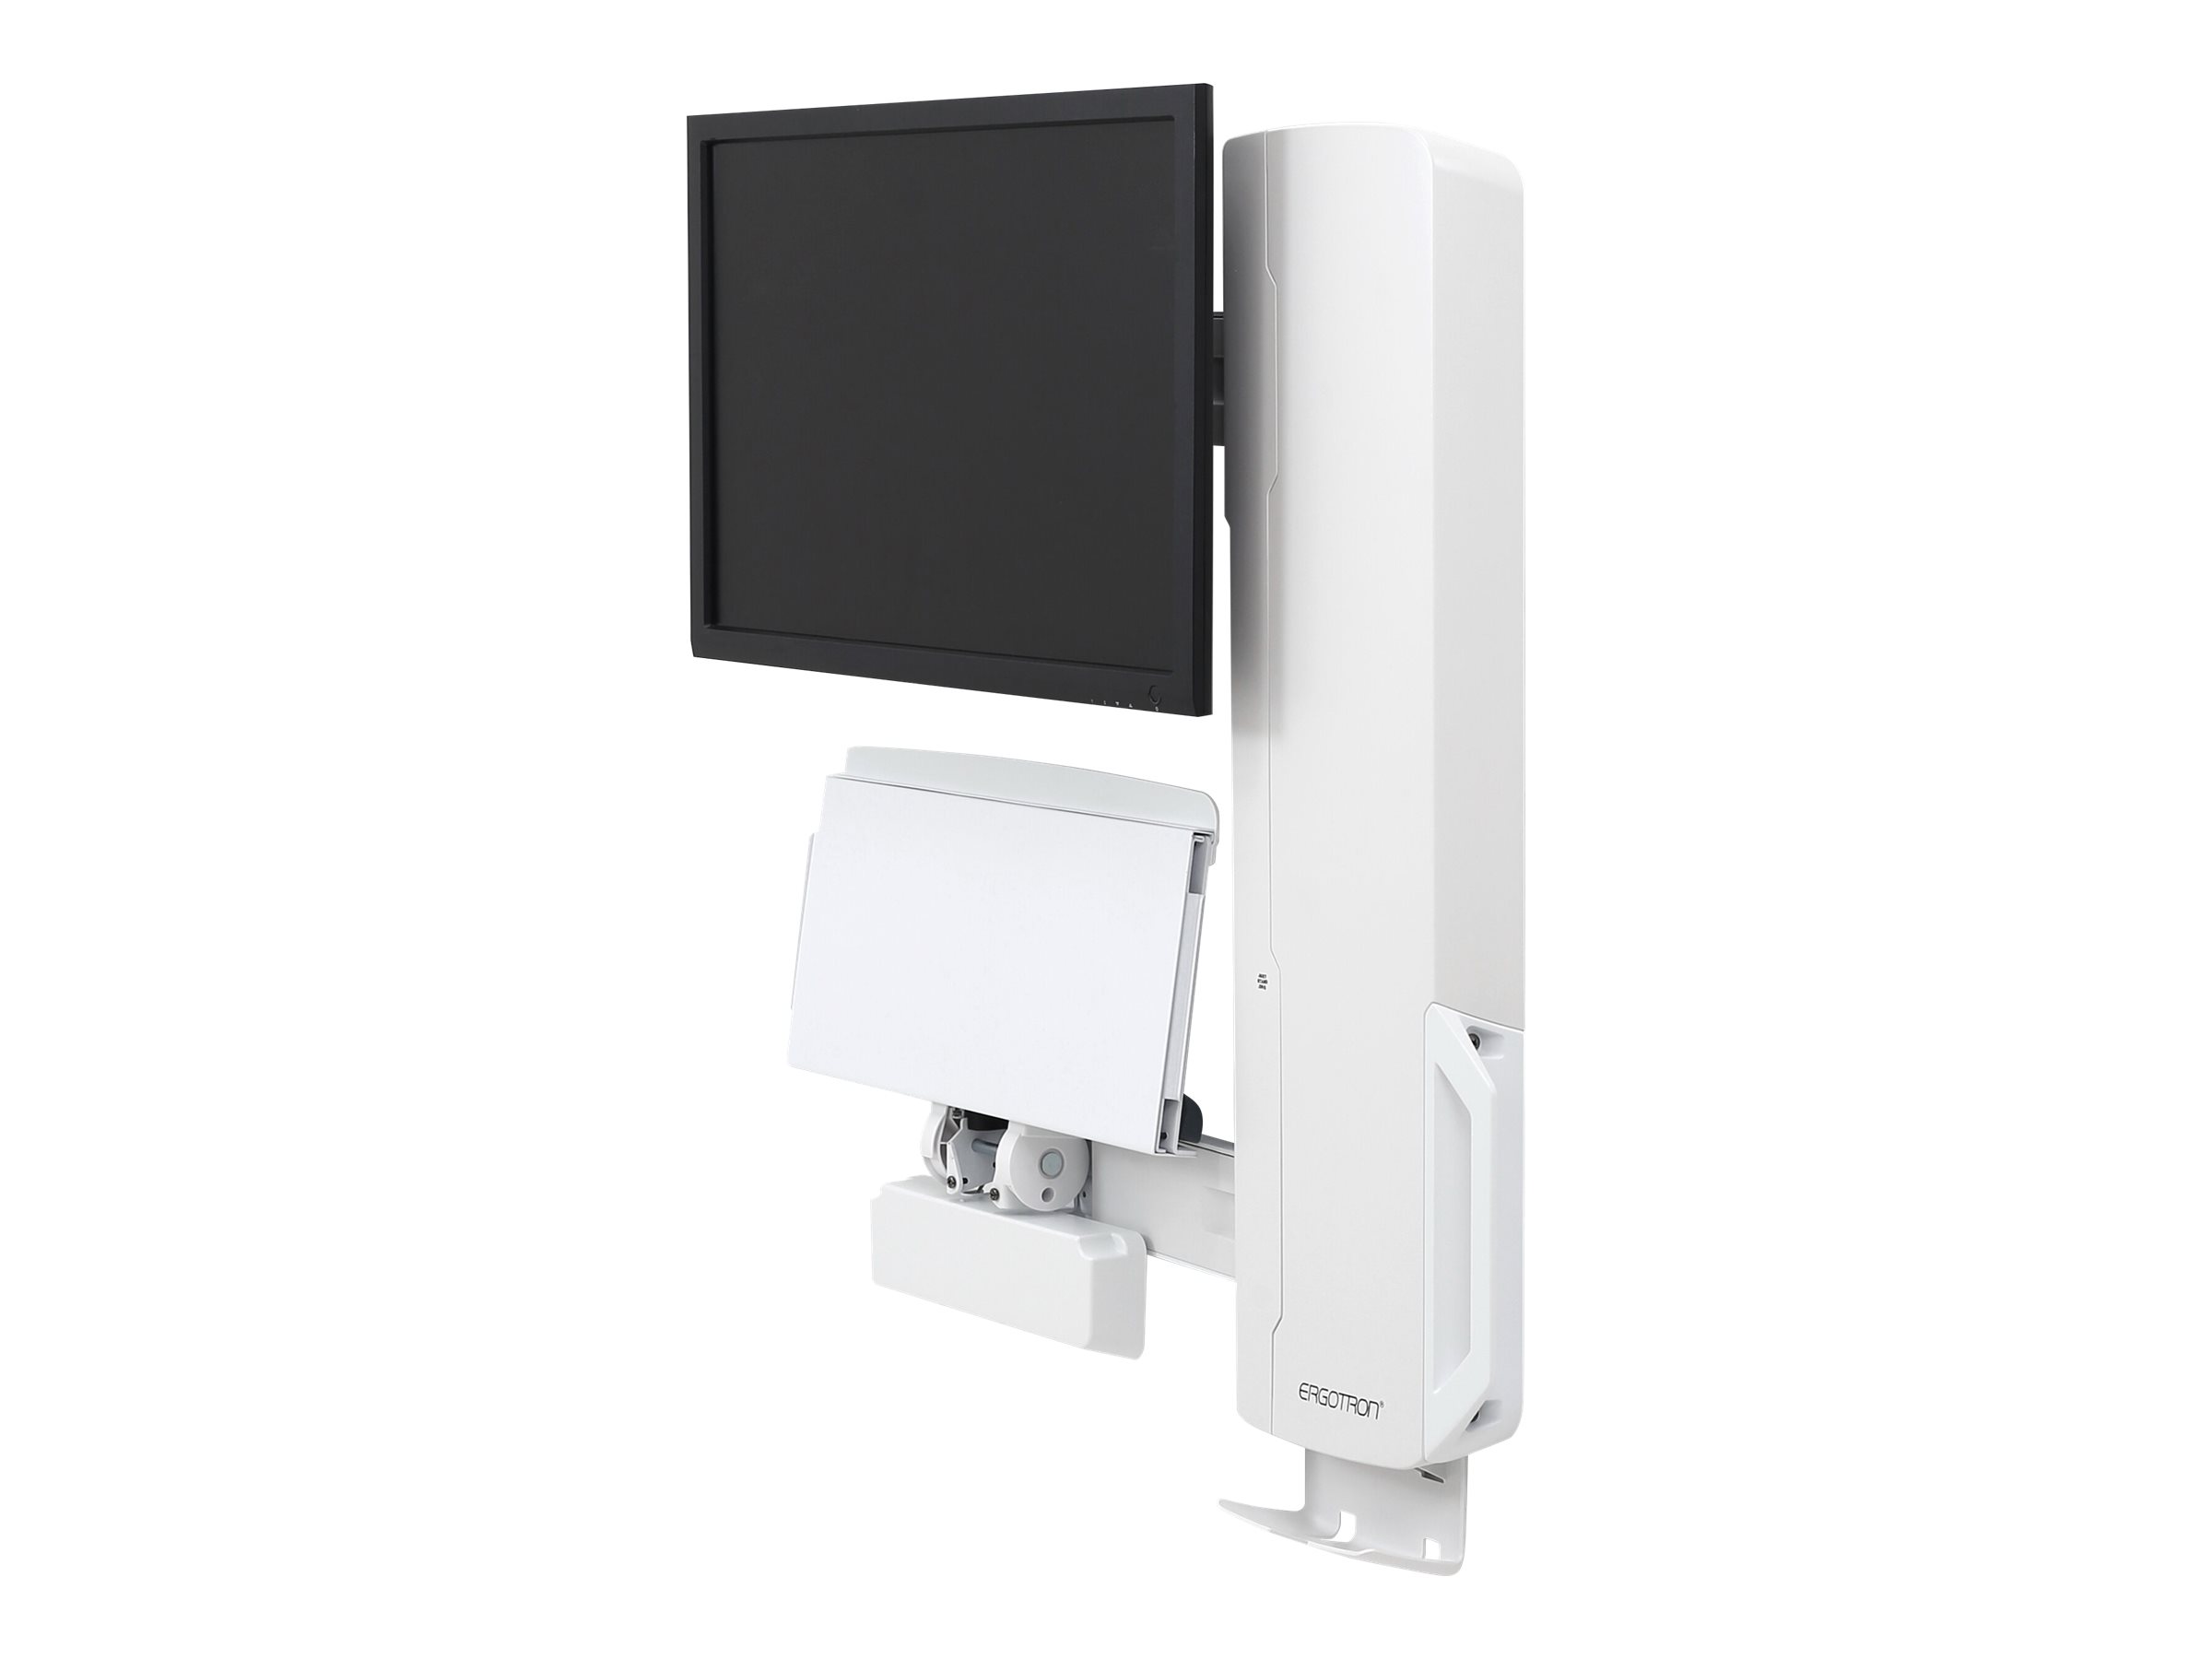 Ergotron - Kit de montage (levage vertical) - pour écran LCD/équipement PC - système assis-debout - blanc - Taille d'écran : jusqu'à 24 pouces - montable sur mur - 61-081-062 - Accessoires pour écran